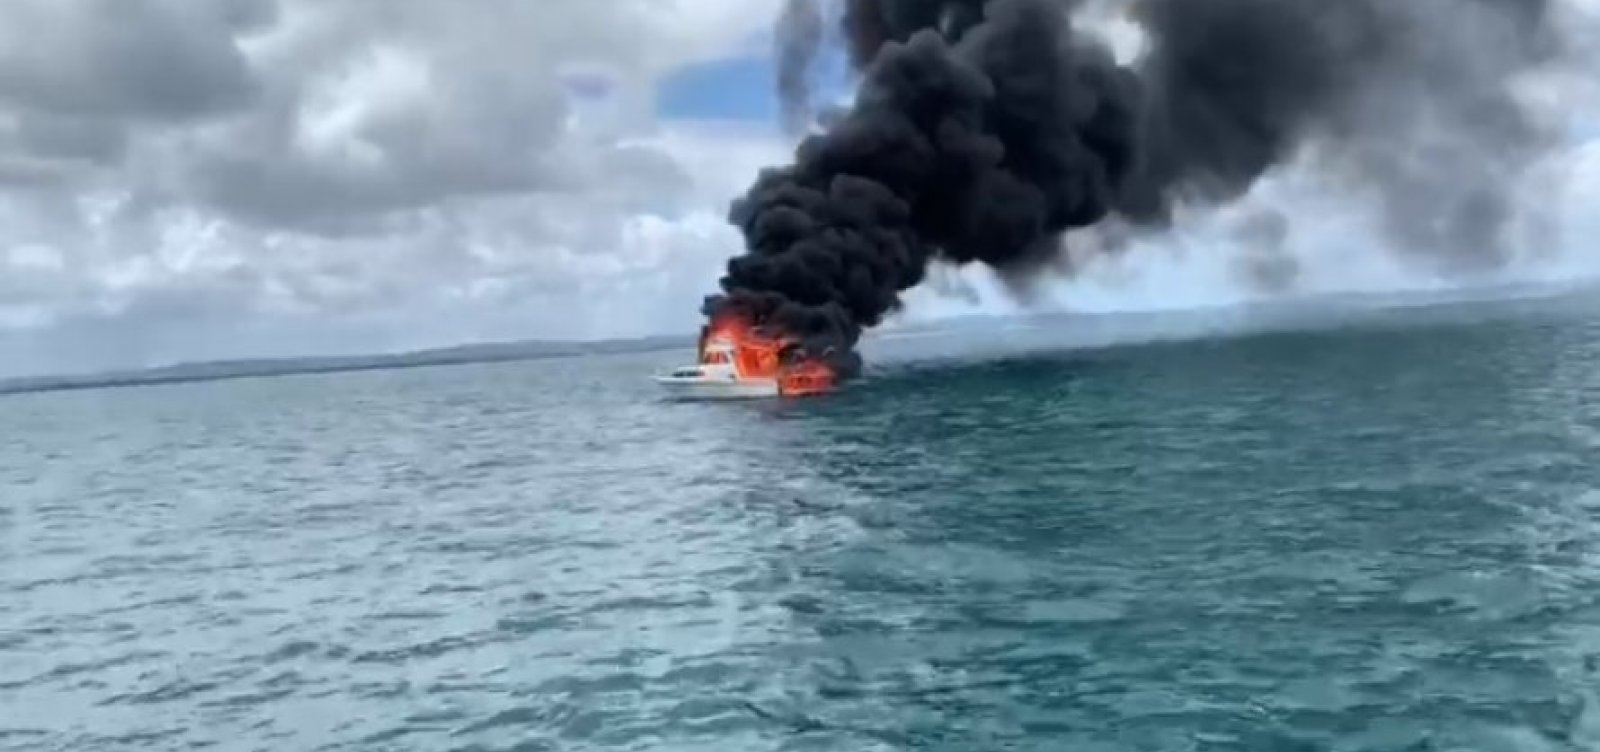 Lancha particular pega fogo próxima à Marina de Itaparica